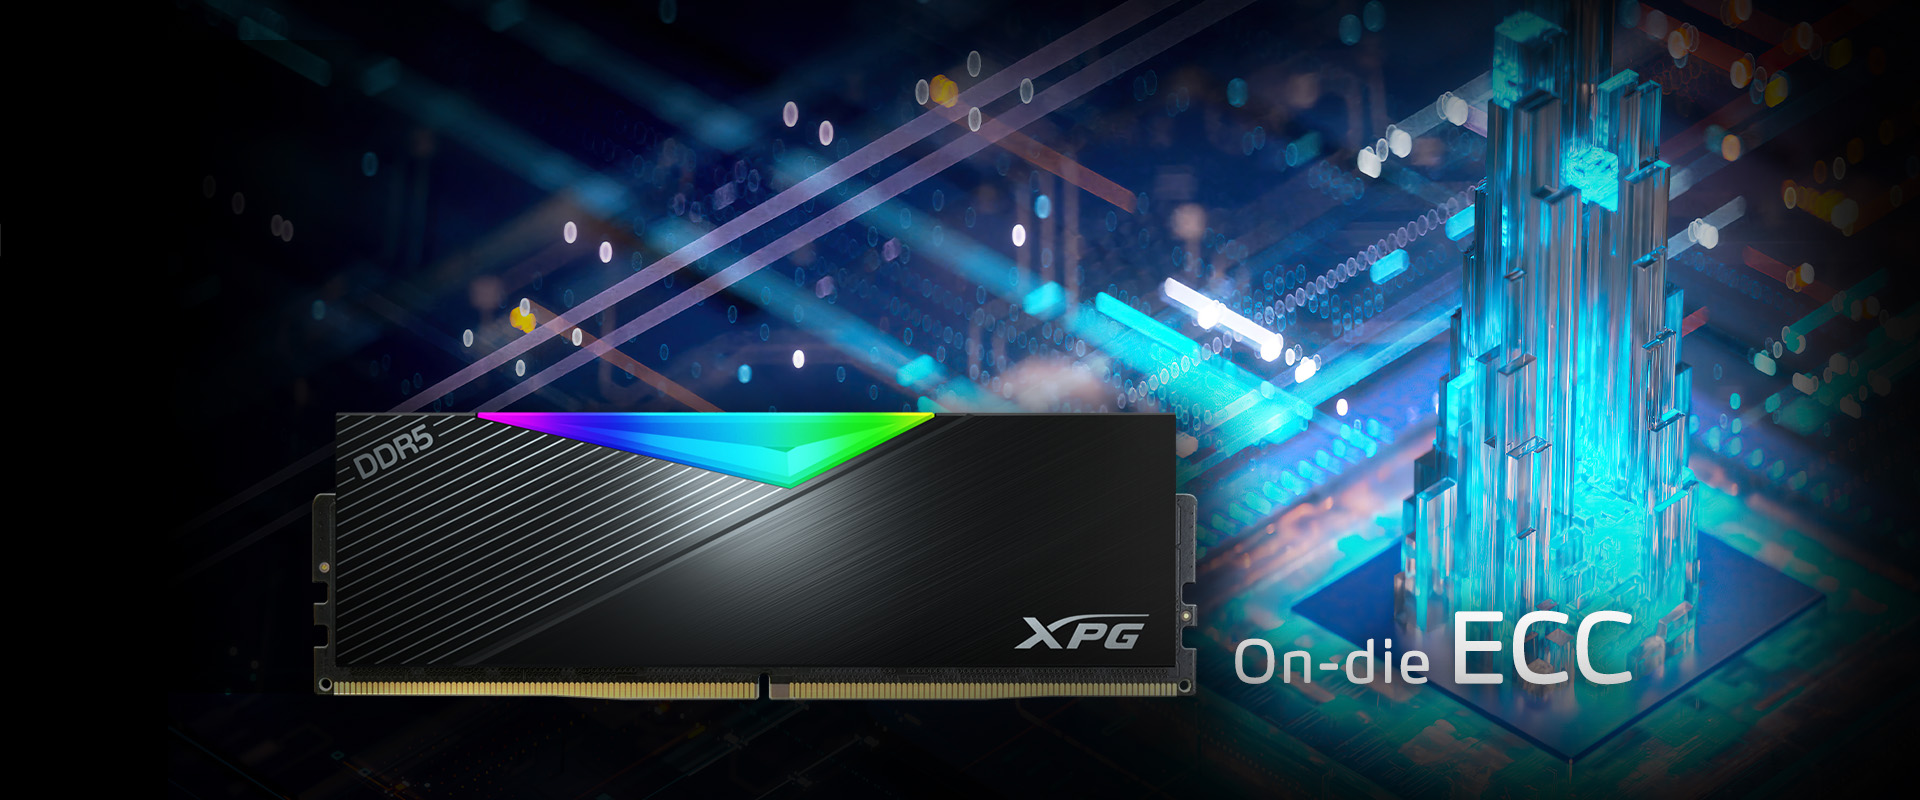 Adata XPG Lancer 16GB DDR5 6000Mhz CL30 - memory Black, DDR5